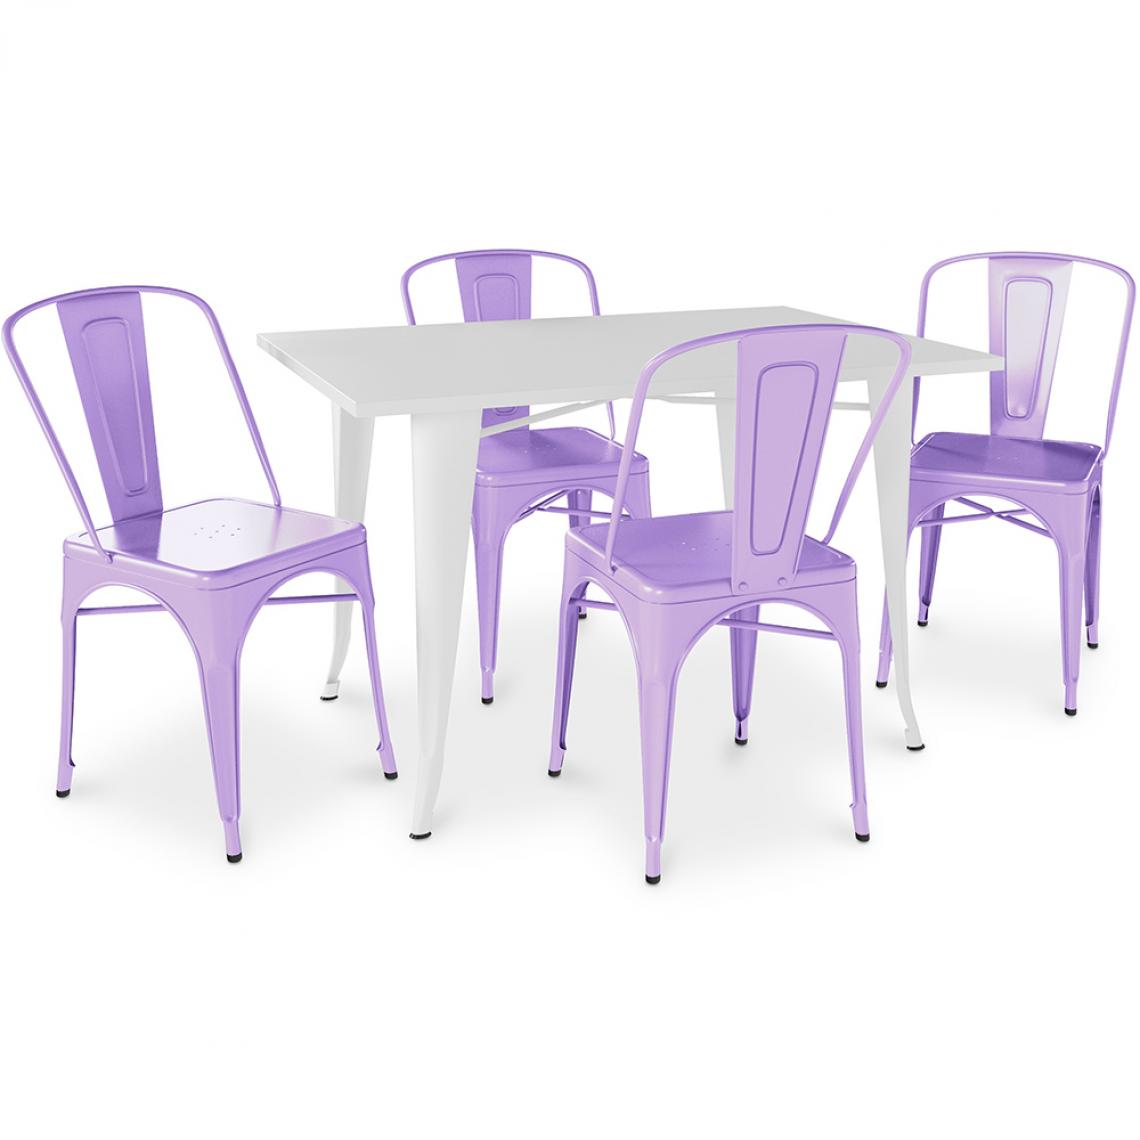 Iconik Interior - Table de salle à manger + 4 chaises de salle à manger Set Bistrot Stylix Design Industriel Métal - Nouvelle Edition Violet pastel - Chaises